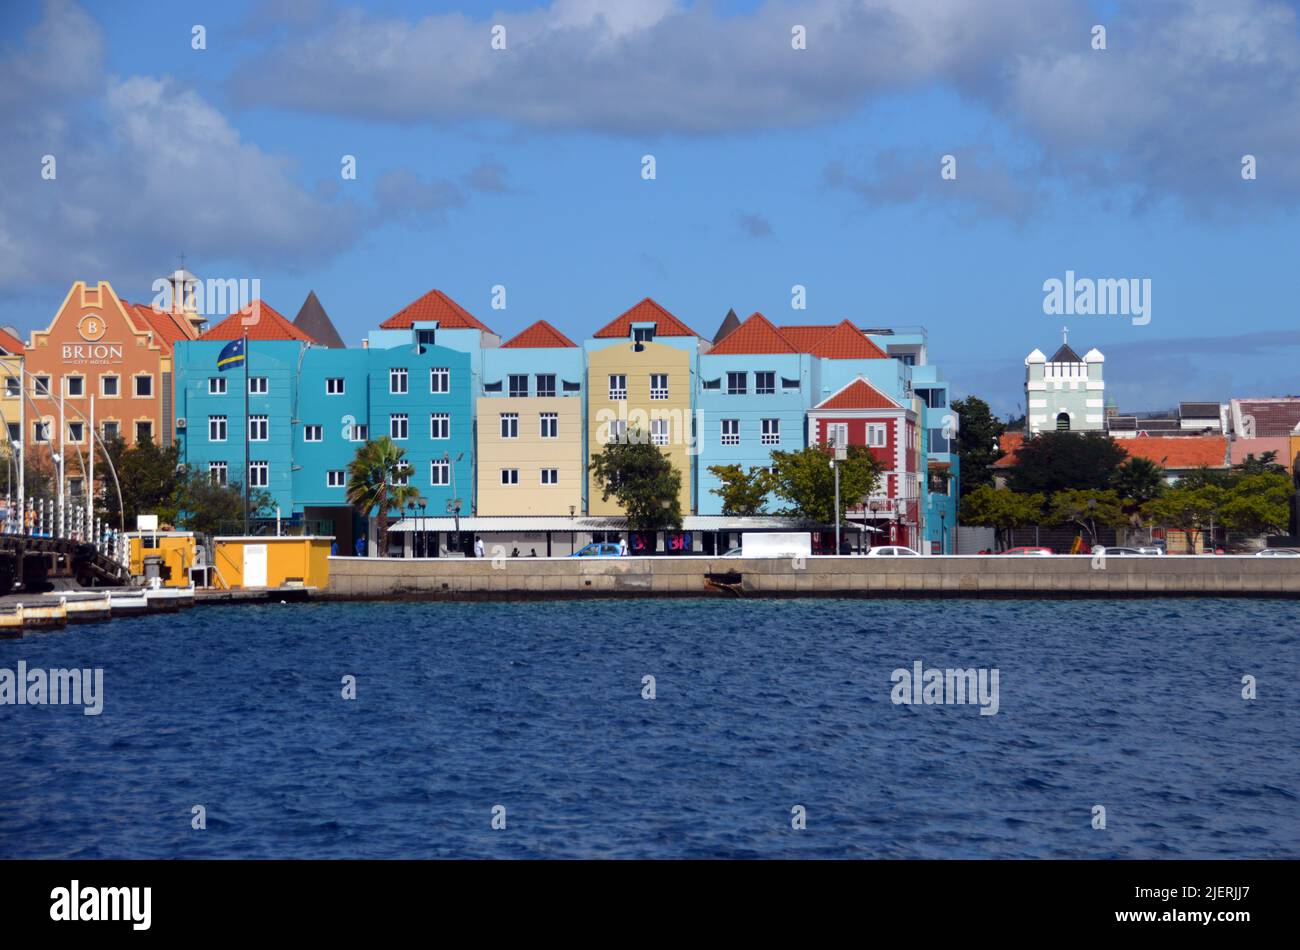 Pastellfarbene Kolonialgebäude an der Waterfront von Willemstad in der Nähe der Queen Emma Bridge, dem Kapitol von Curaçao, einer niederländischen Karibikinsel. Stockfoto